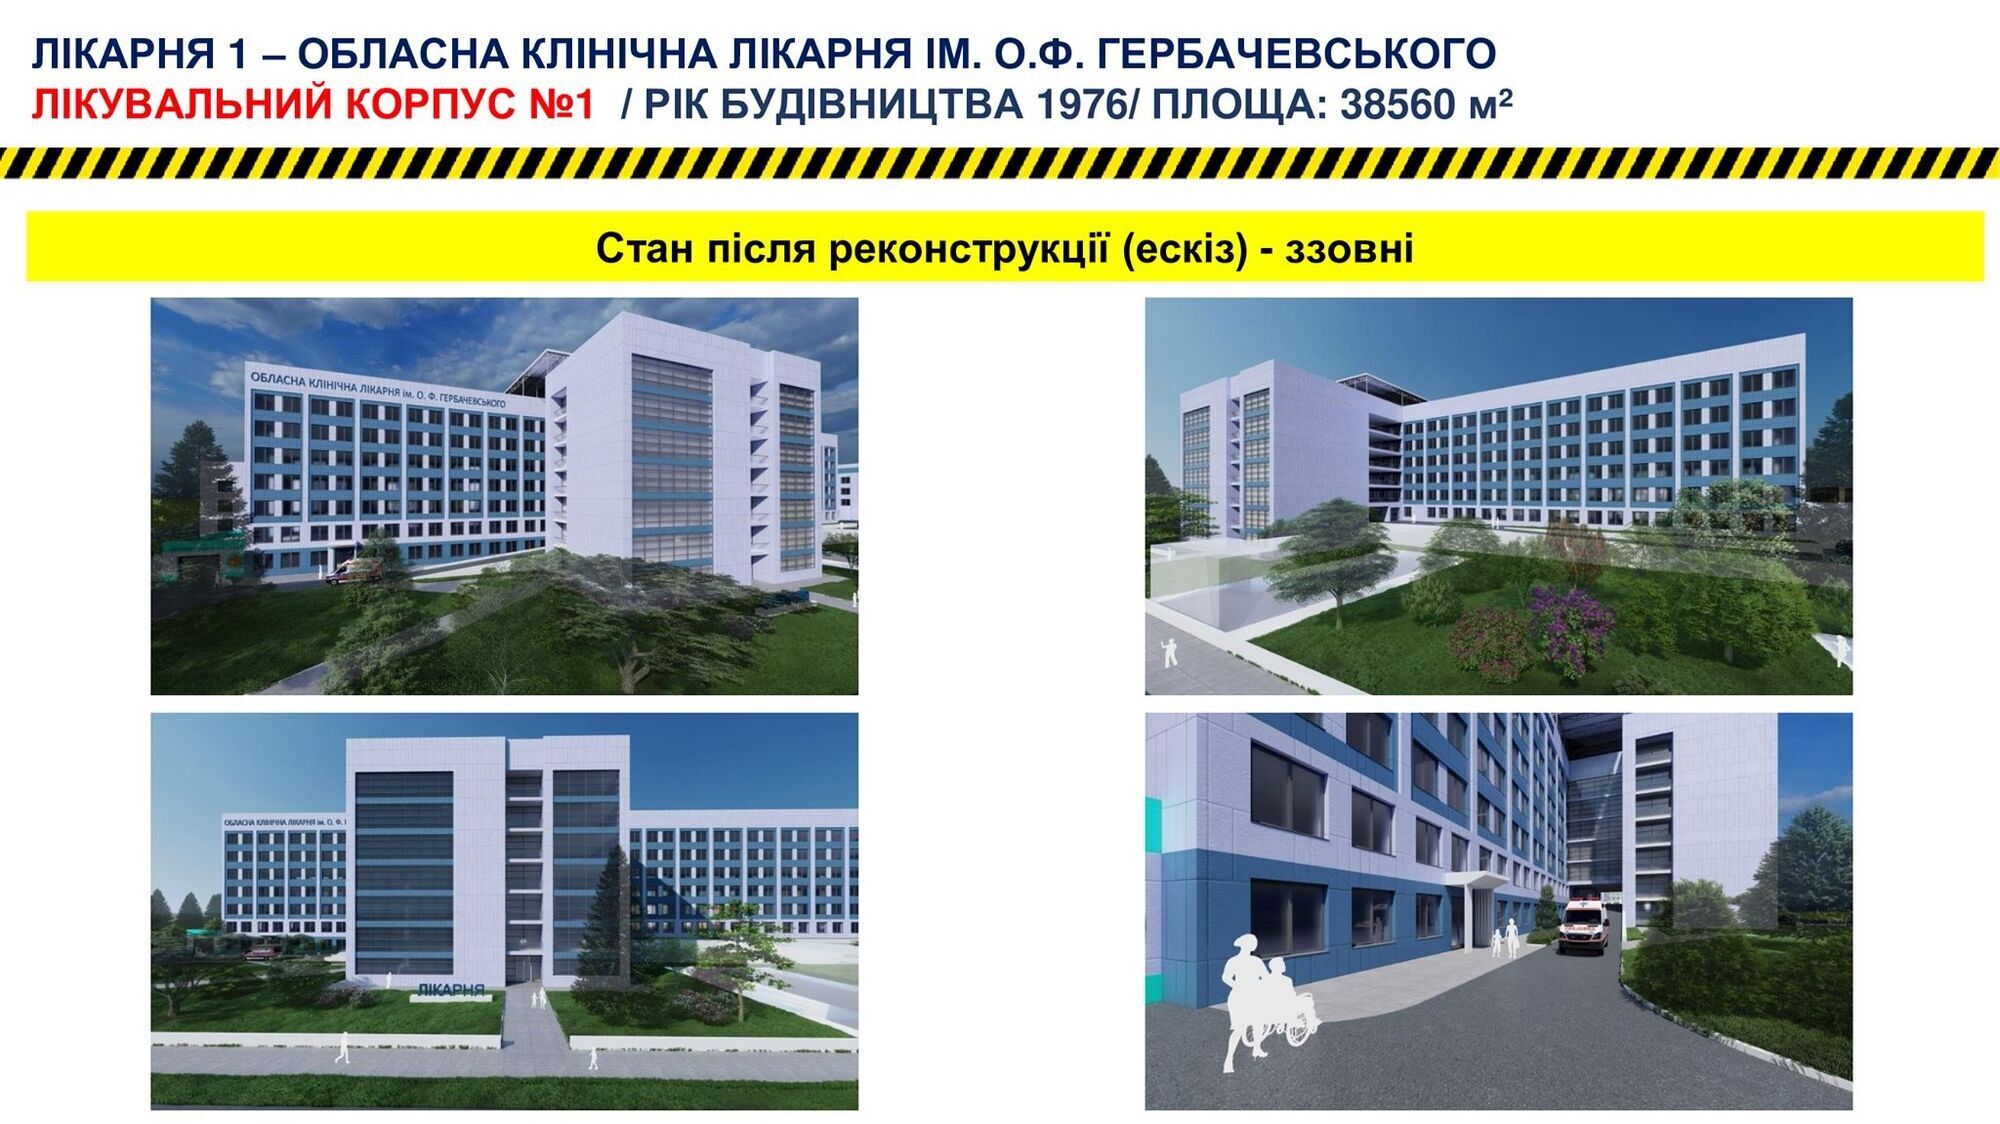 Планується провести реконструкцію обласної лікарні ім. О.Ф. Гербачевського та дитячої обласної лікарні.